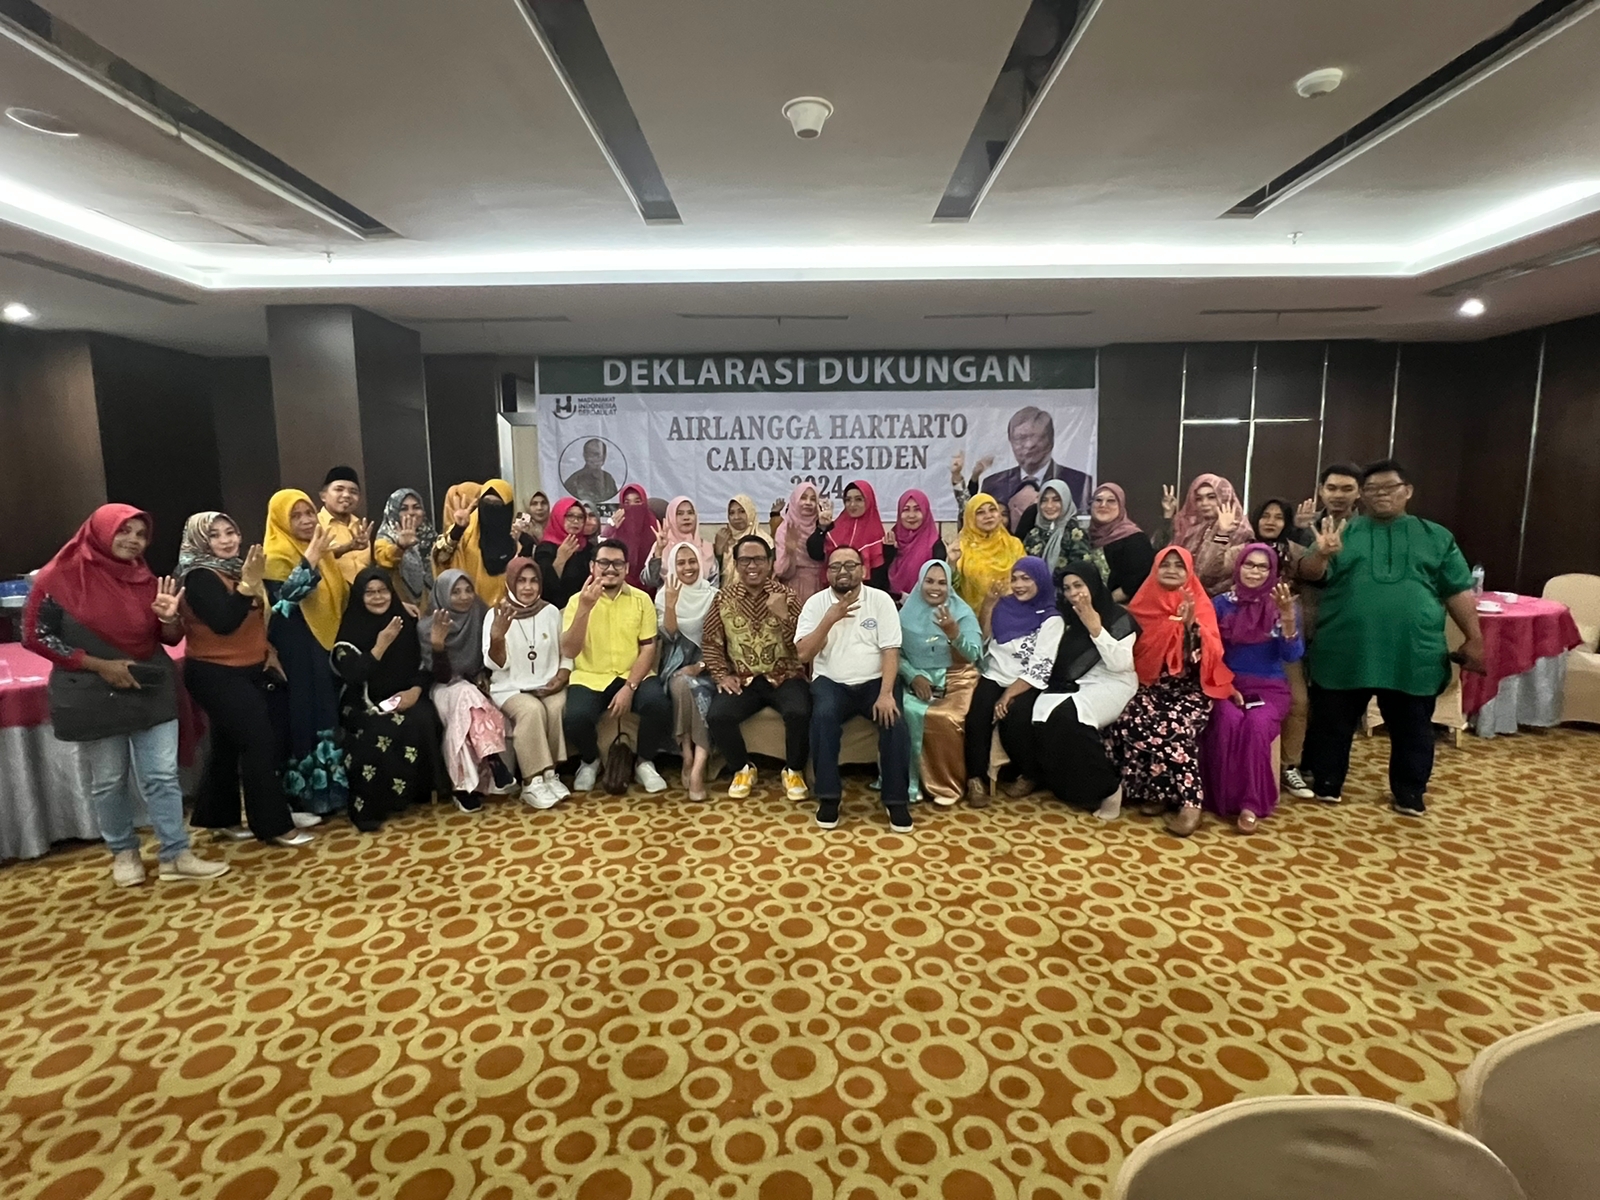 Kinerjanya Dirasakan Pelaku UMKM, Puluhan Emak-emak di Riau Dukung Airlangga Hartarto Jadi Presiden 